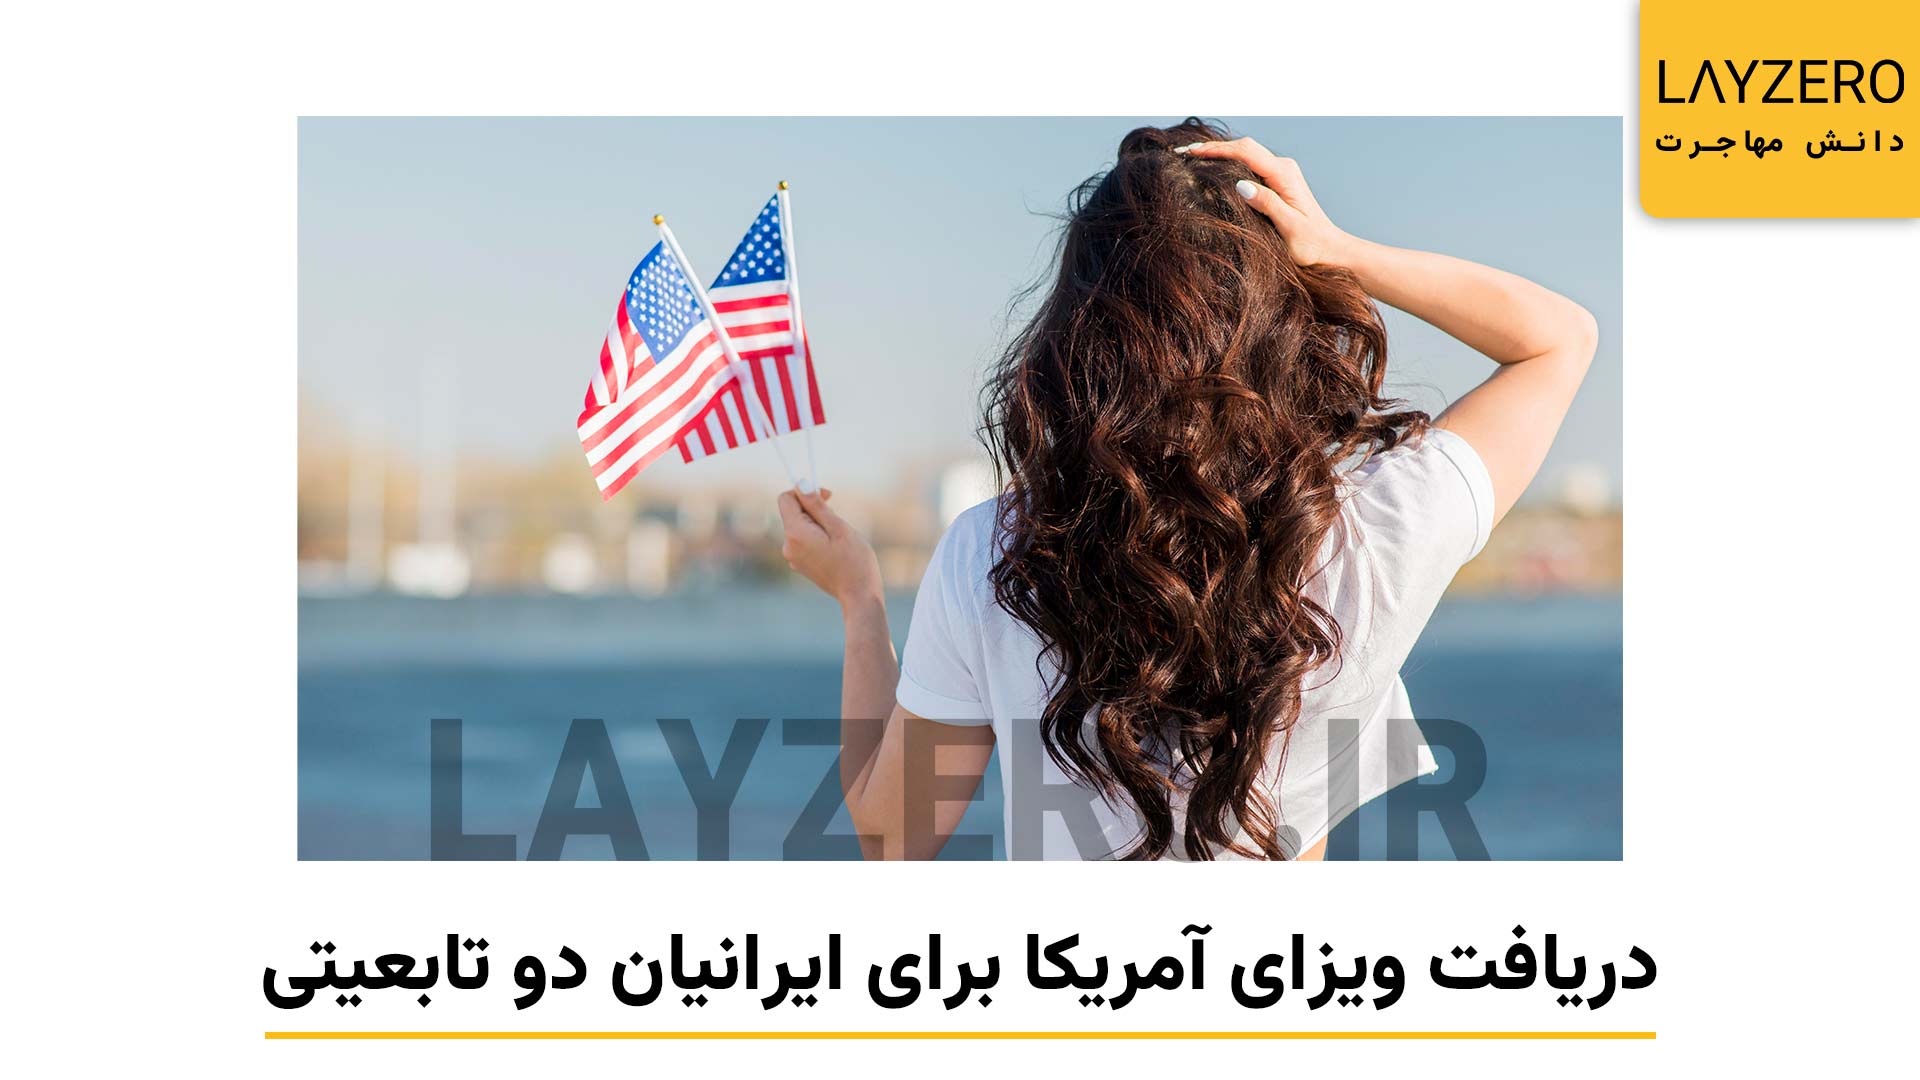 لایزرو: پایگاه، دانش کشور ها و مهاجرت: دریافت ویزای آمریکا برای ایرانیان دو تابعیتی